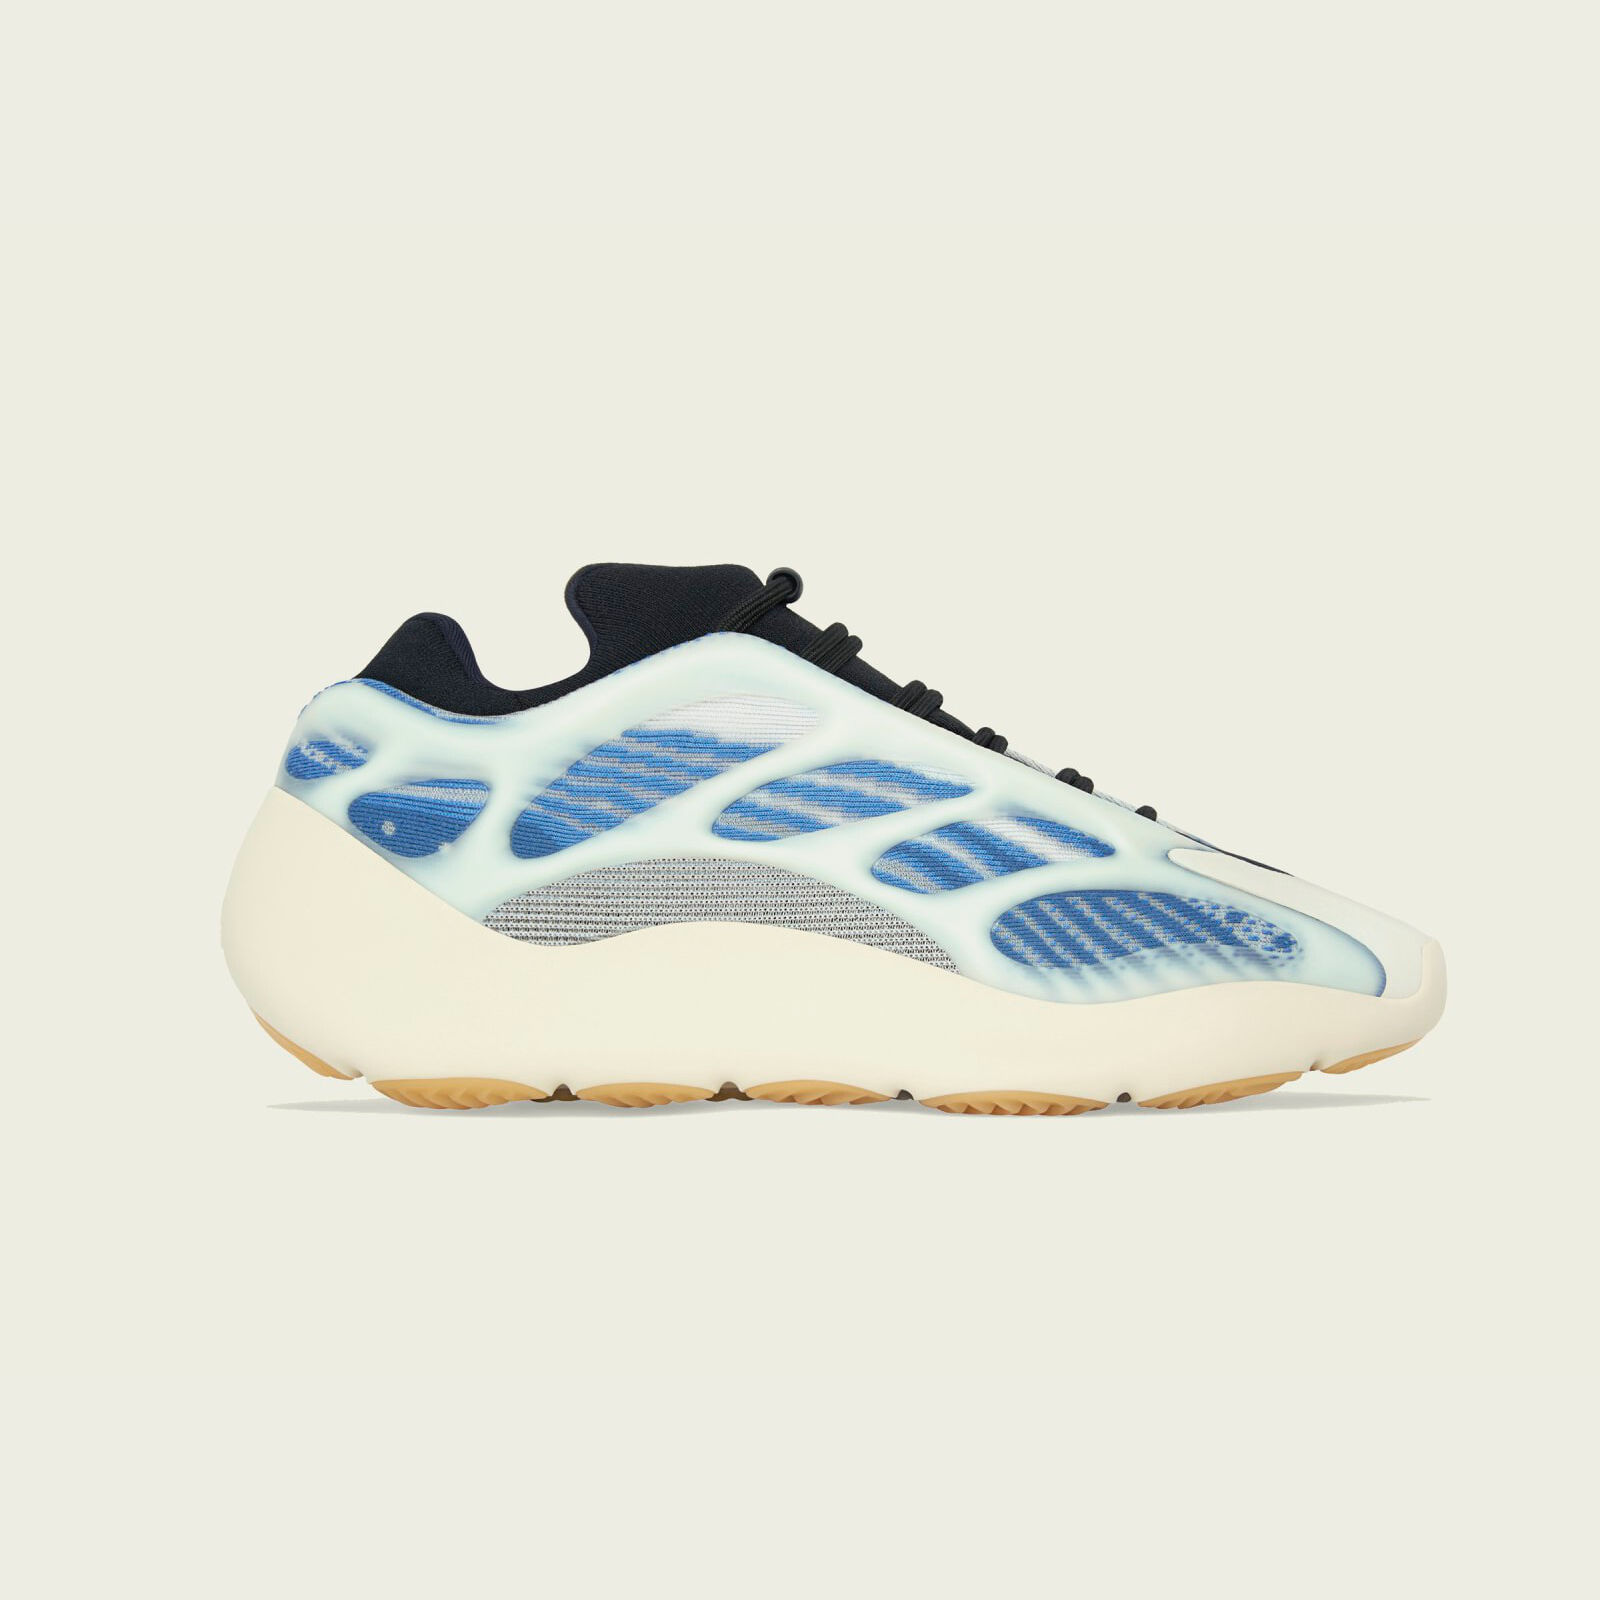 Adidas Yeezy 700 V3
« Kyanite »